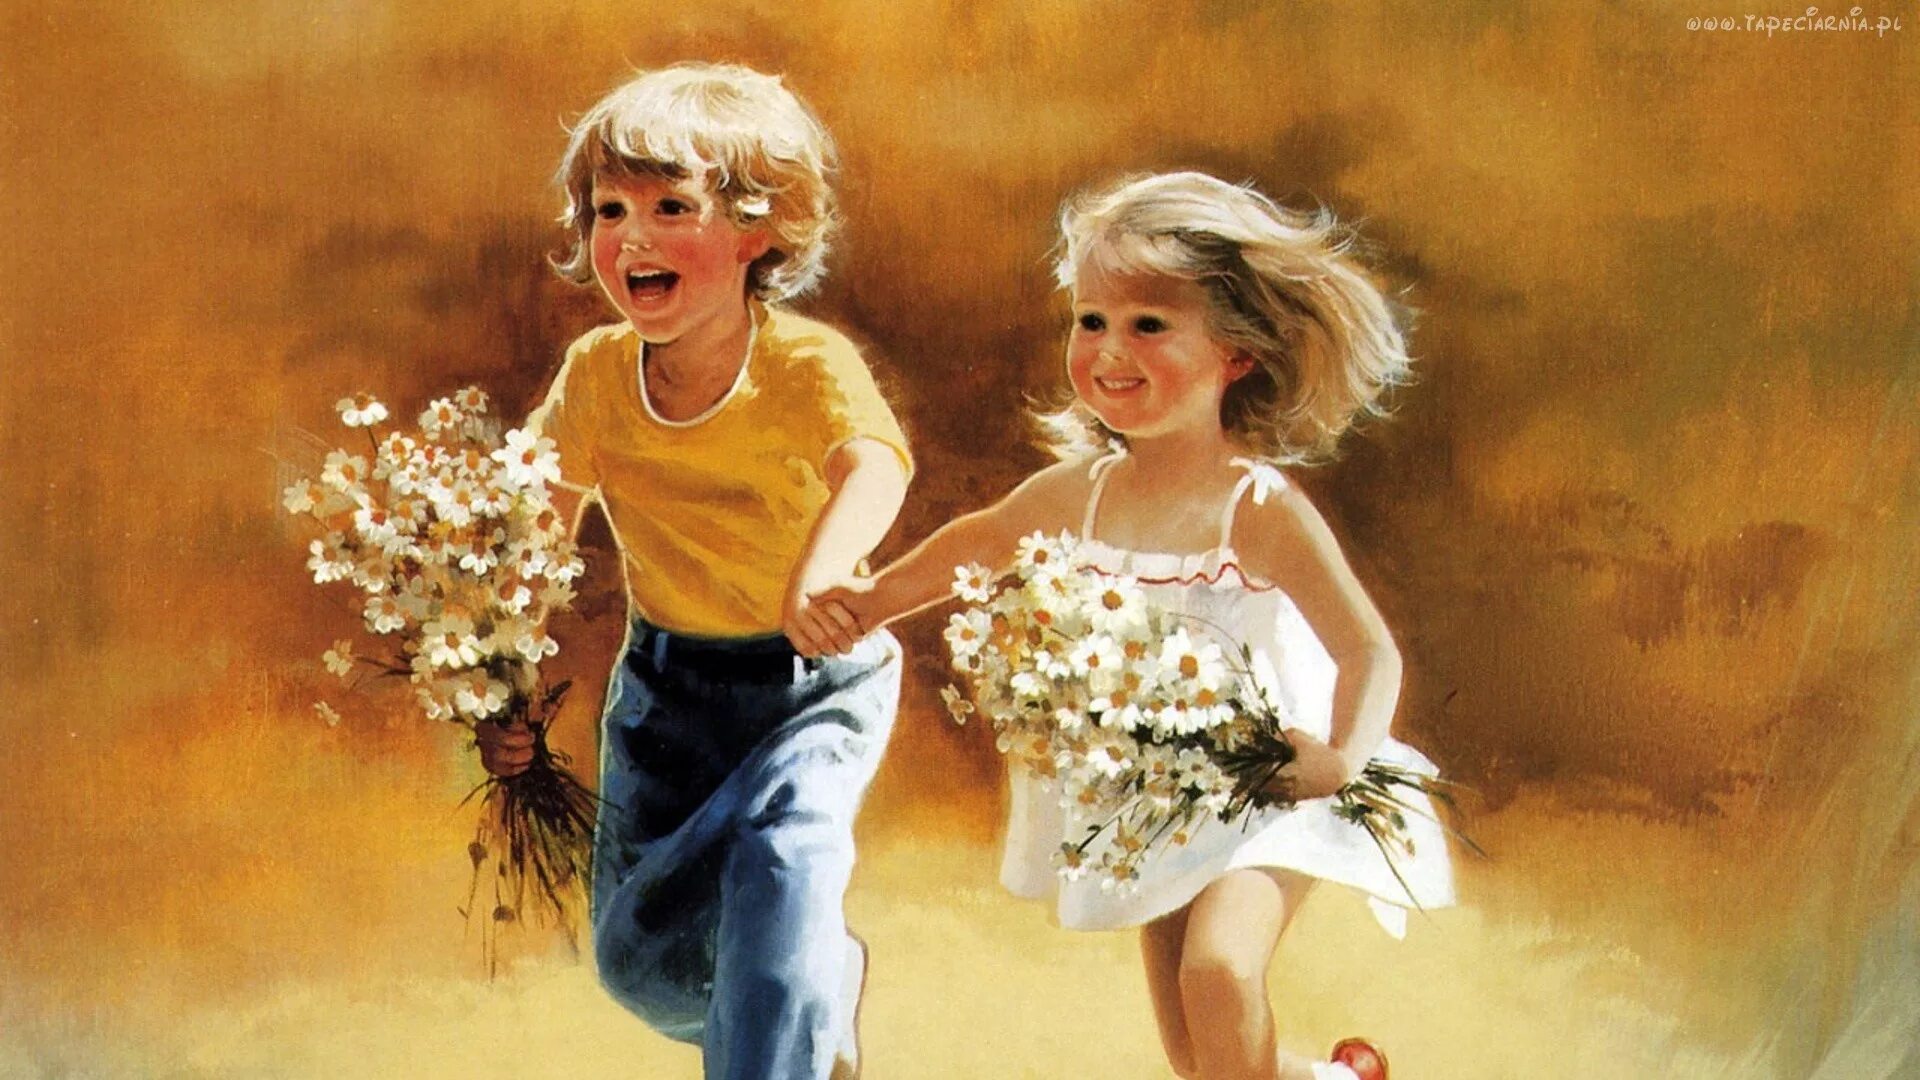 Родом из детства счастливая я. Картины Дональда Золана беззаботное детство. Счастливое детство. Картина на день защиты детей.